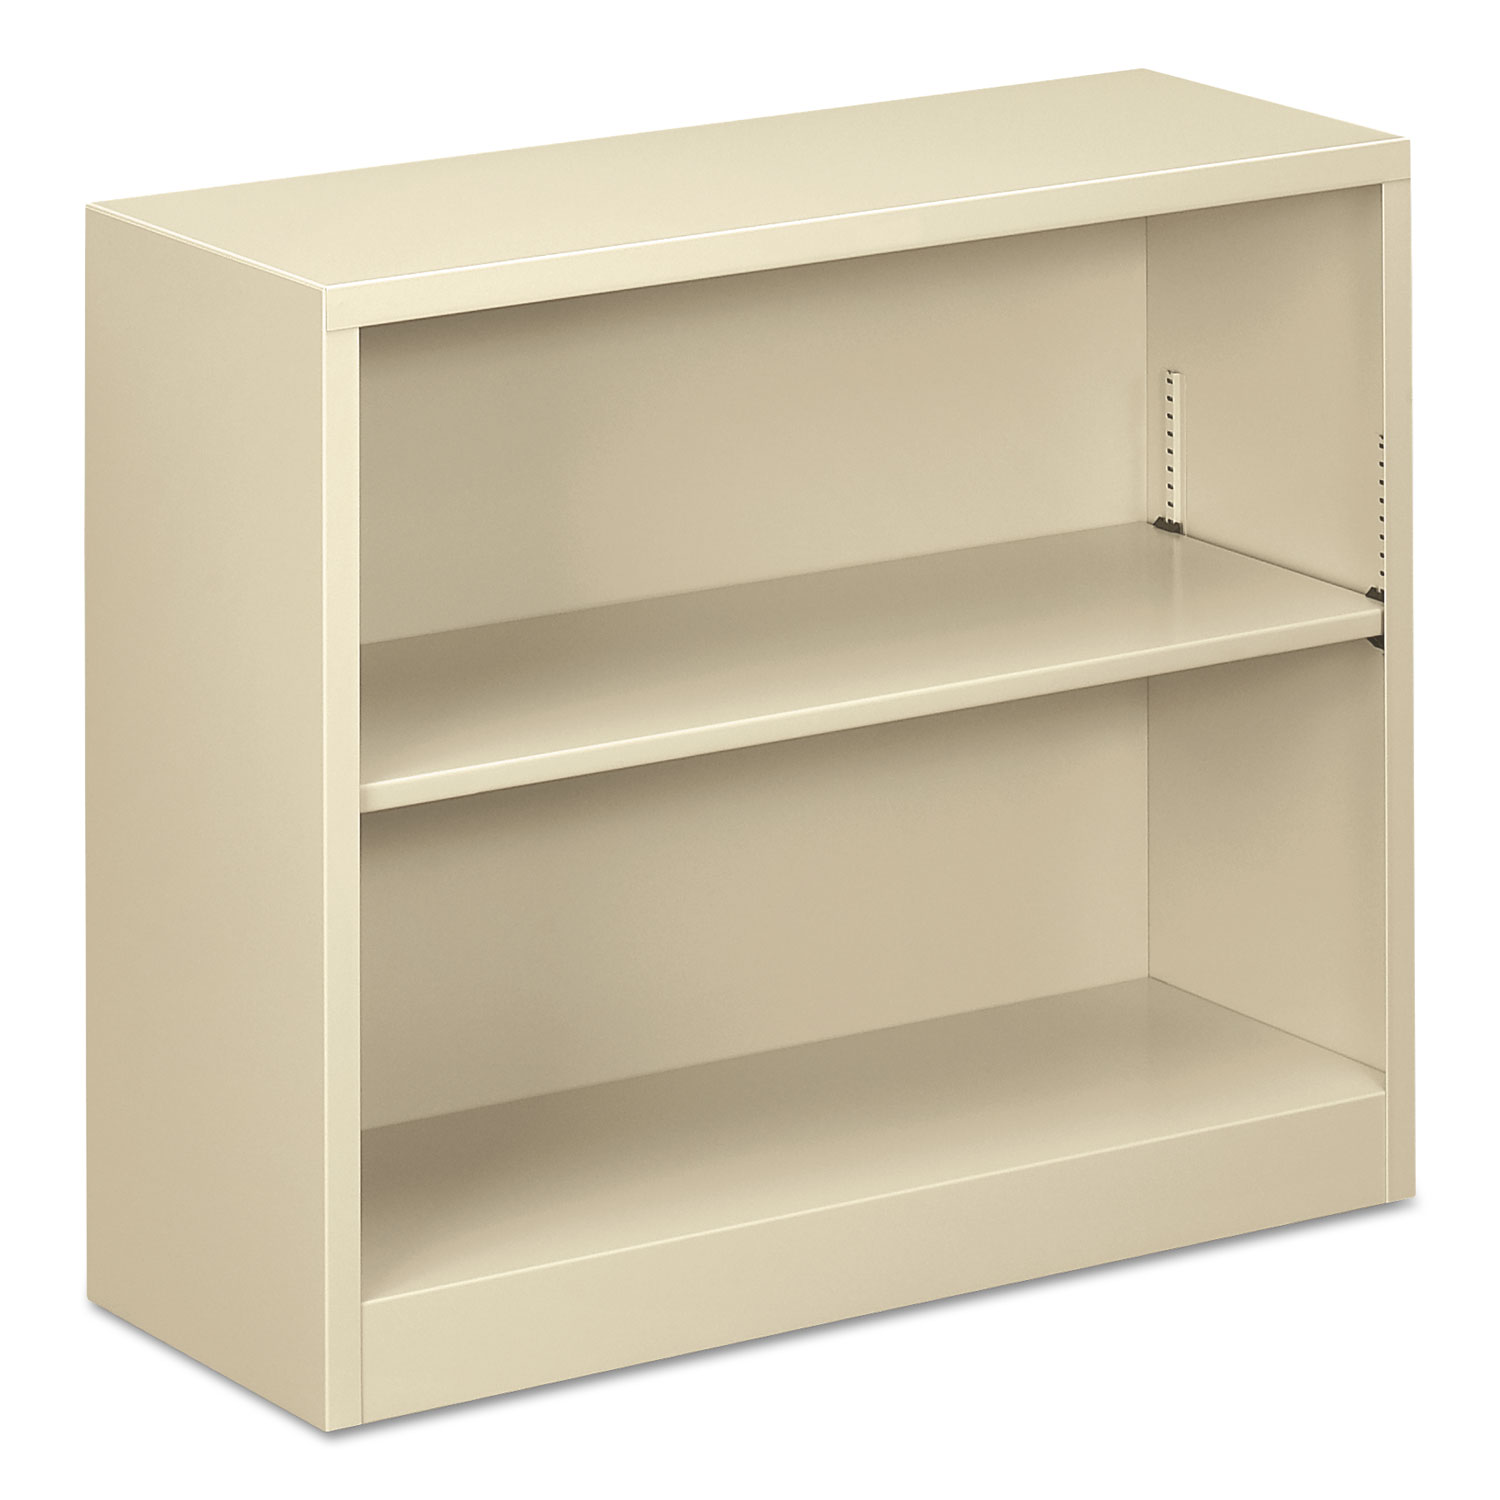  Alera ALEBCM22935PY Steel Bookcase, 2-Shelf, 34.5w x 12.63d x 29h, Putty (ALEBCM22935PY) 